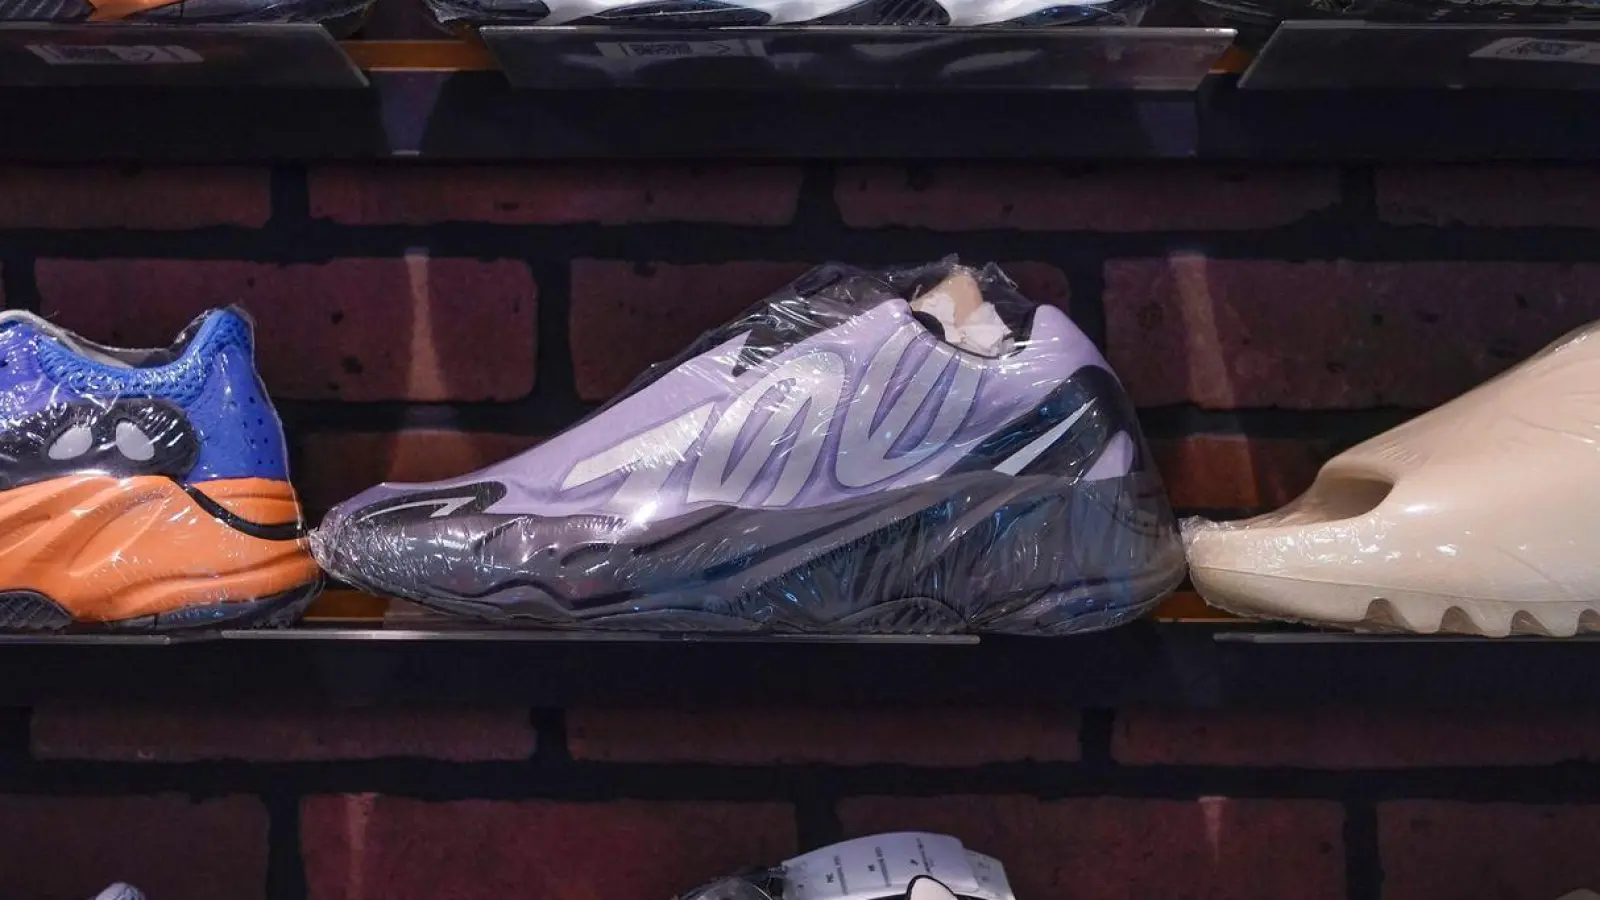 Yeezy-Schuhe von Adidas werden bei Kickclusive, einem Sneaker-Wiederverkaufsladen, ausgestellt. (Foto: Seth Wenig/AP/dpa/Archivbild)